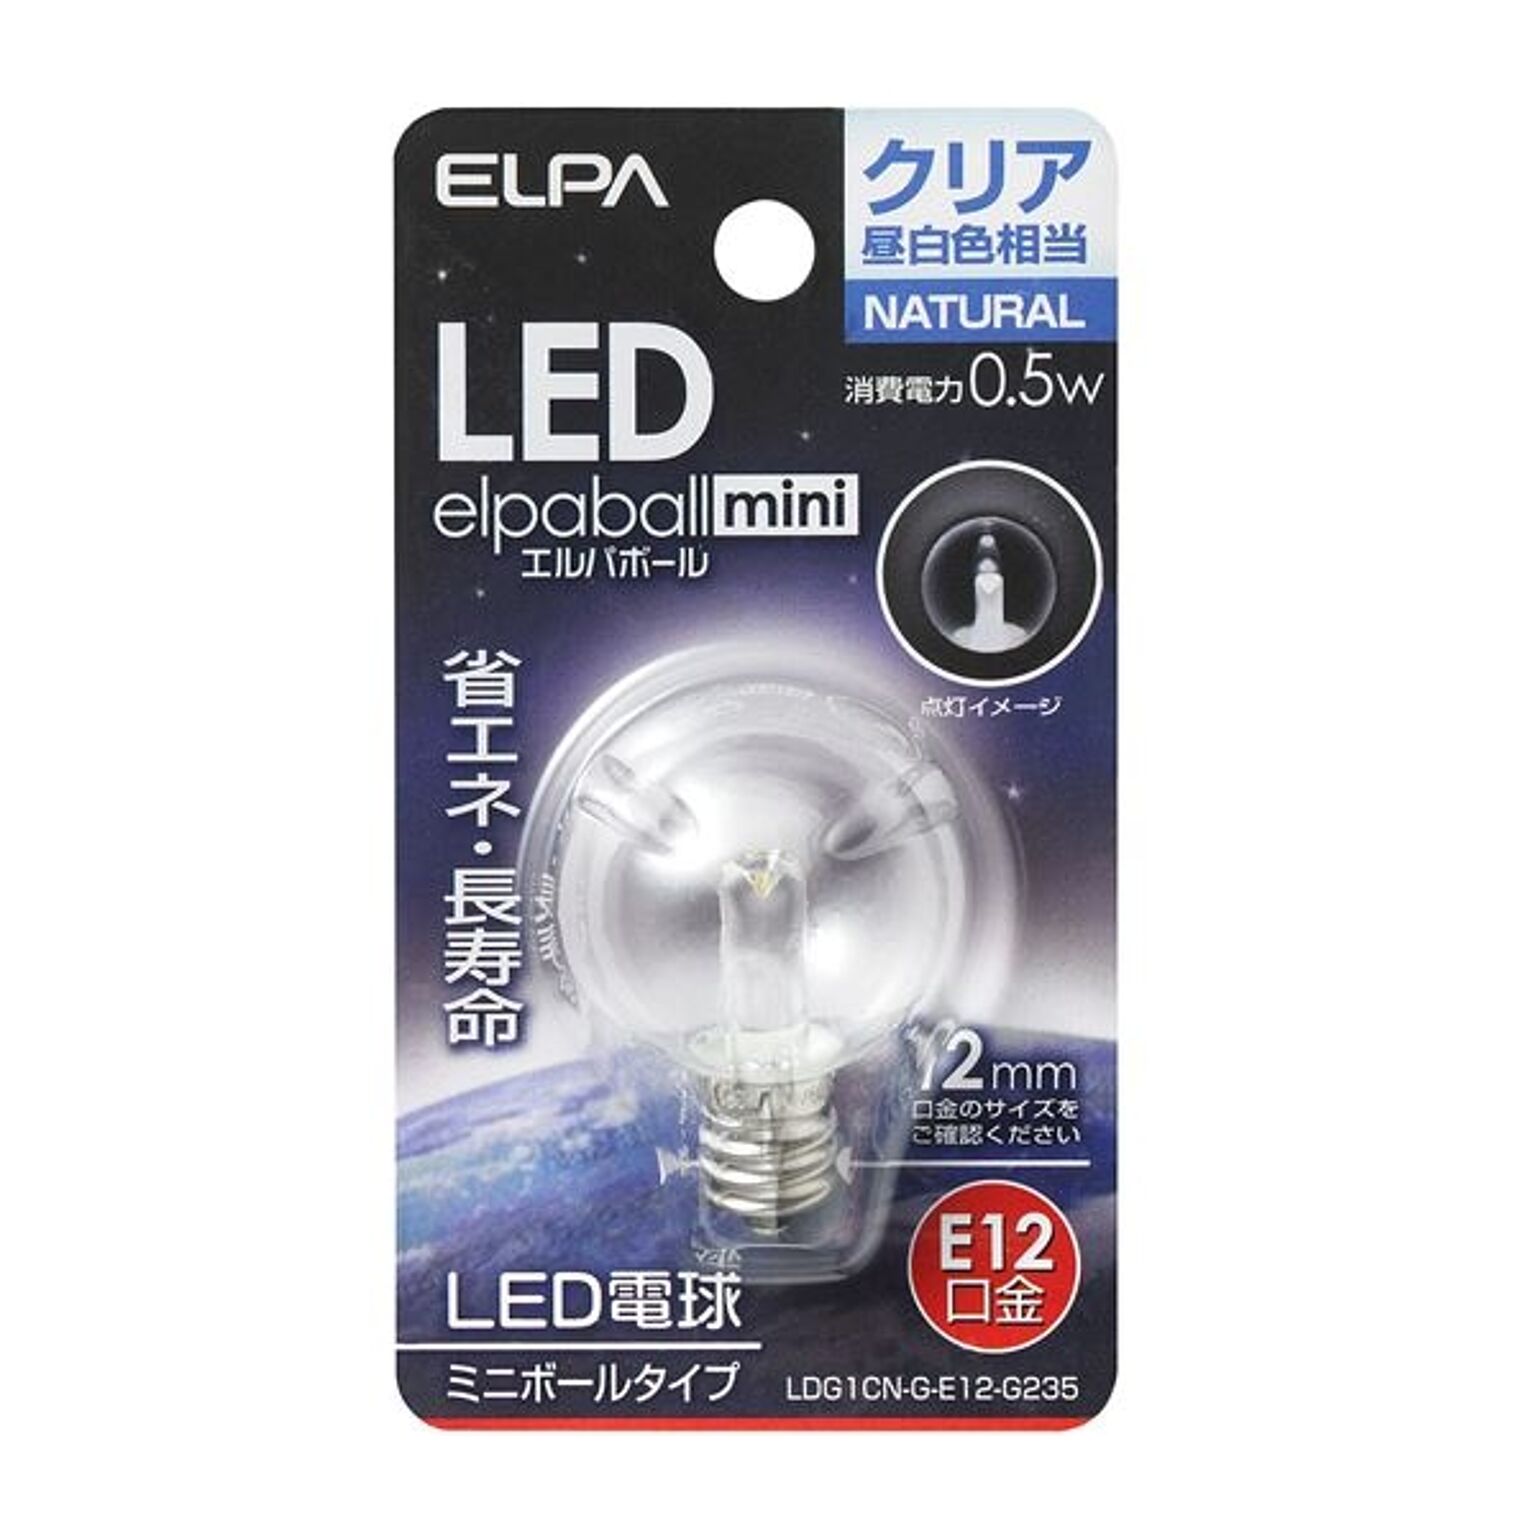 （まとめ） ELPA LED装飾電球 ミニボール球形 E12 G30 クリア昼白色 LDG1CN-G-E12-G235 【×5セット】